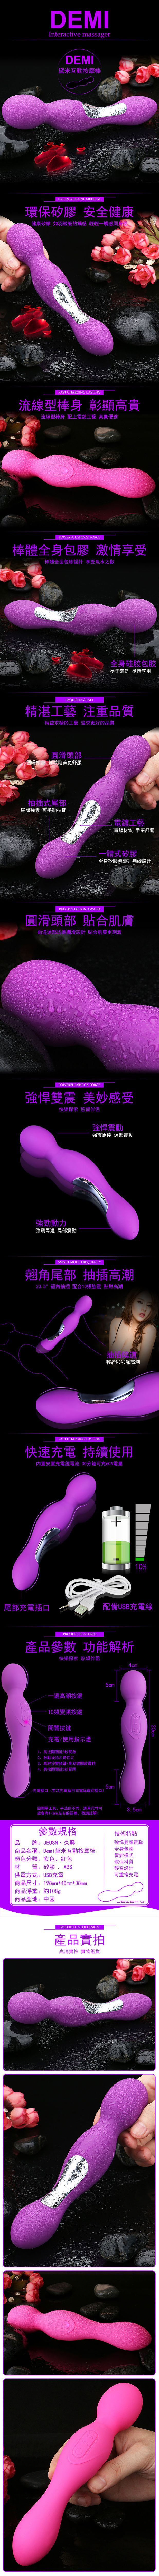 香港久興-Demi黛米-雙頭10段變頻震動USB充電按摩棒-紫色(特)